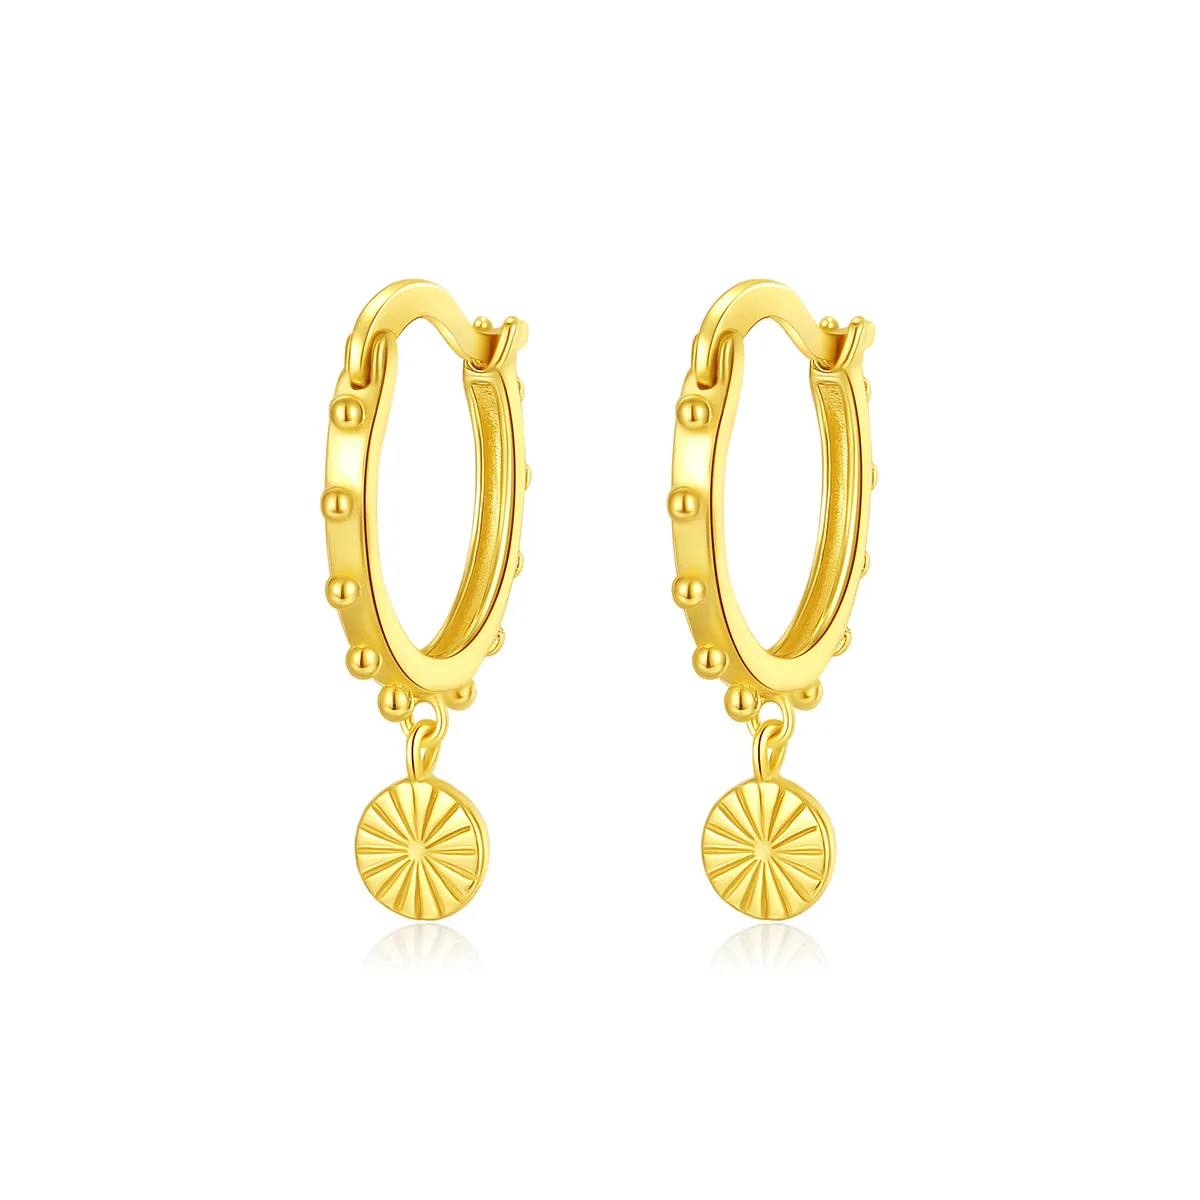 Europeo nuovo stile vintage placcato oro 18k orecchini pendenti gioielli fascino donne squisiti orecchini in argento S925 per le donne festa di nozze regalo di San Valentino SPC